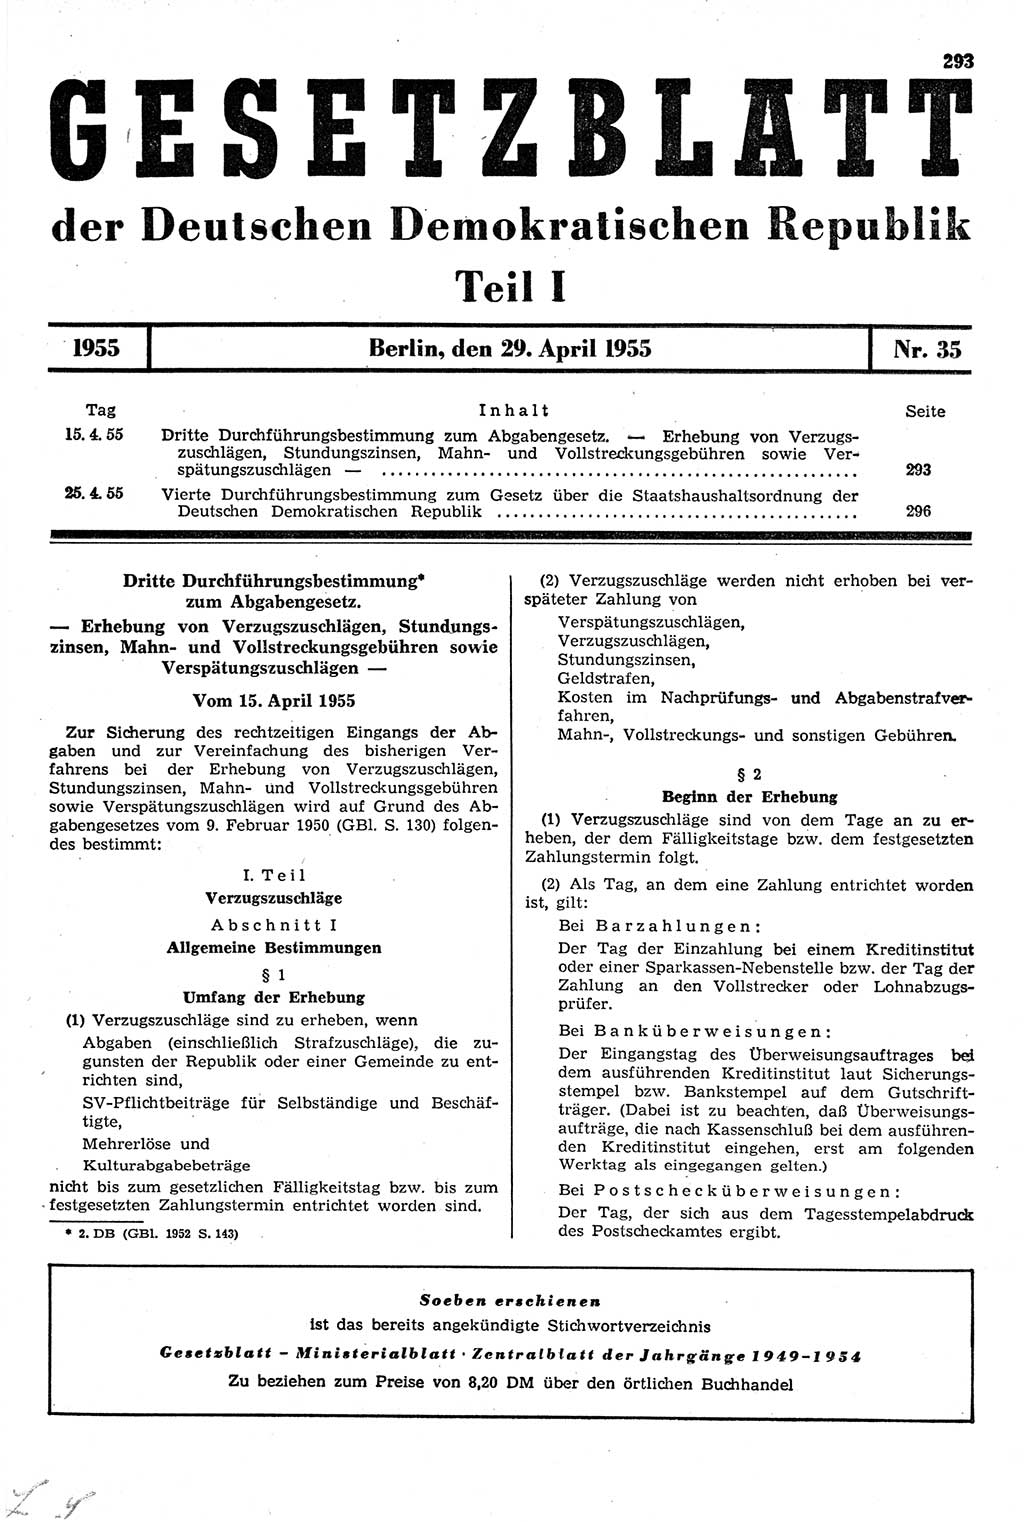 Gesetzblatt (GBl.) der Deutschen Demokratischen Republik (DDR) Teil Ⅰ 1955, Seite 293 (GBl. DDR Ⅰ 1955, S. 293)